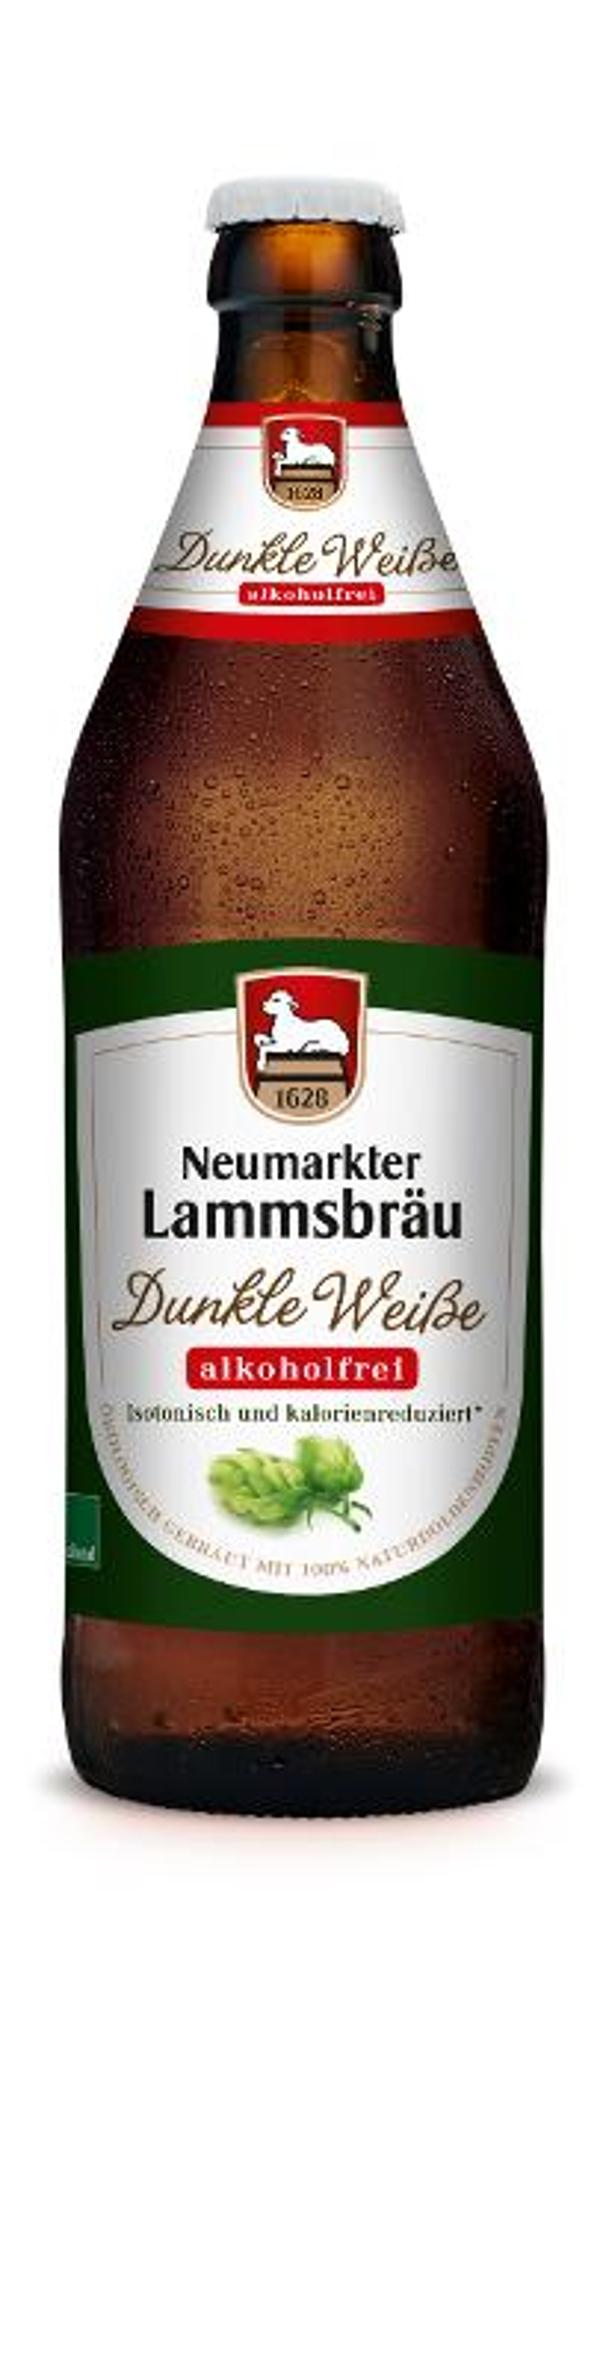 Produktfoto zu Lammsbräu - Dunkle Weiße, alkoholfrei